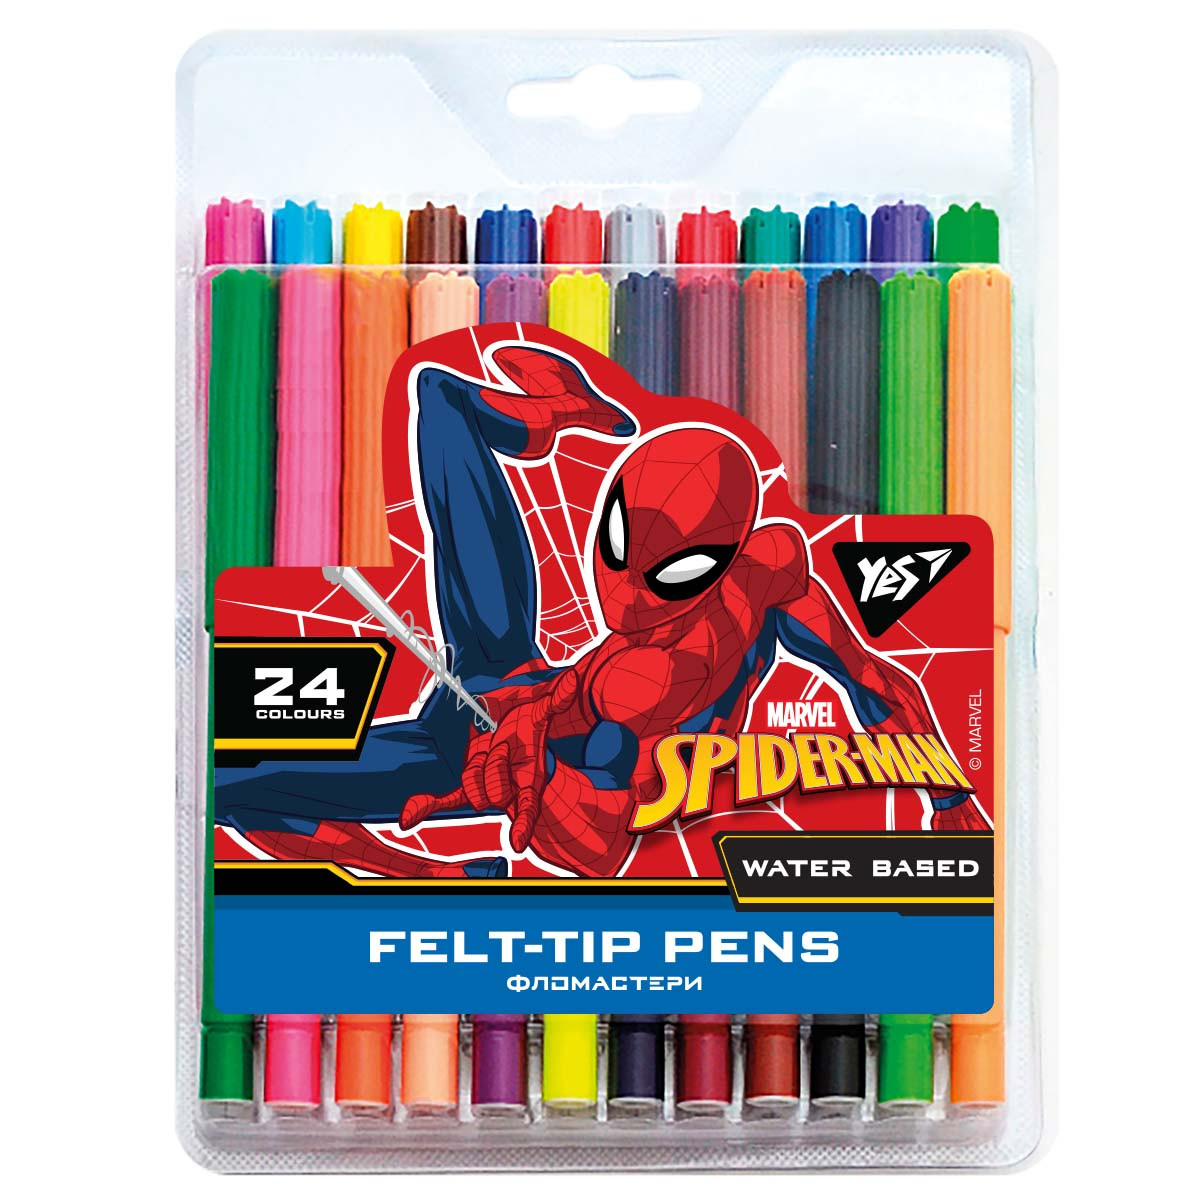 Фломастери YES 24 кольори Marvel.Spiderman (650509)